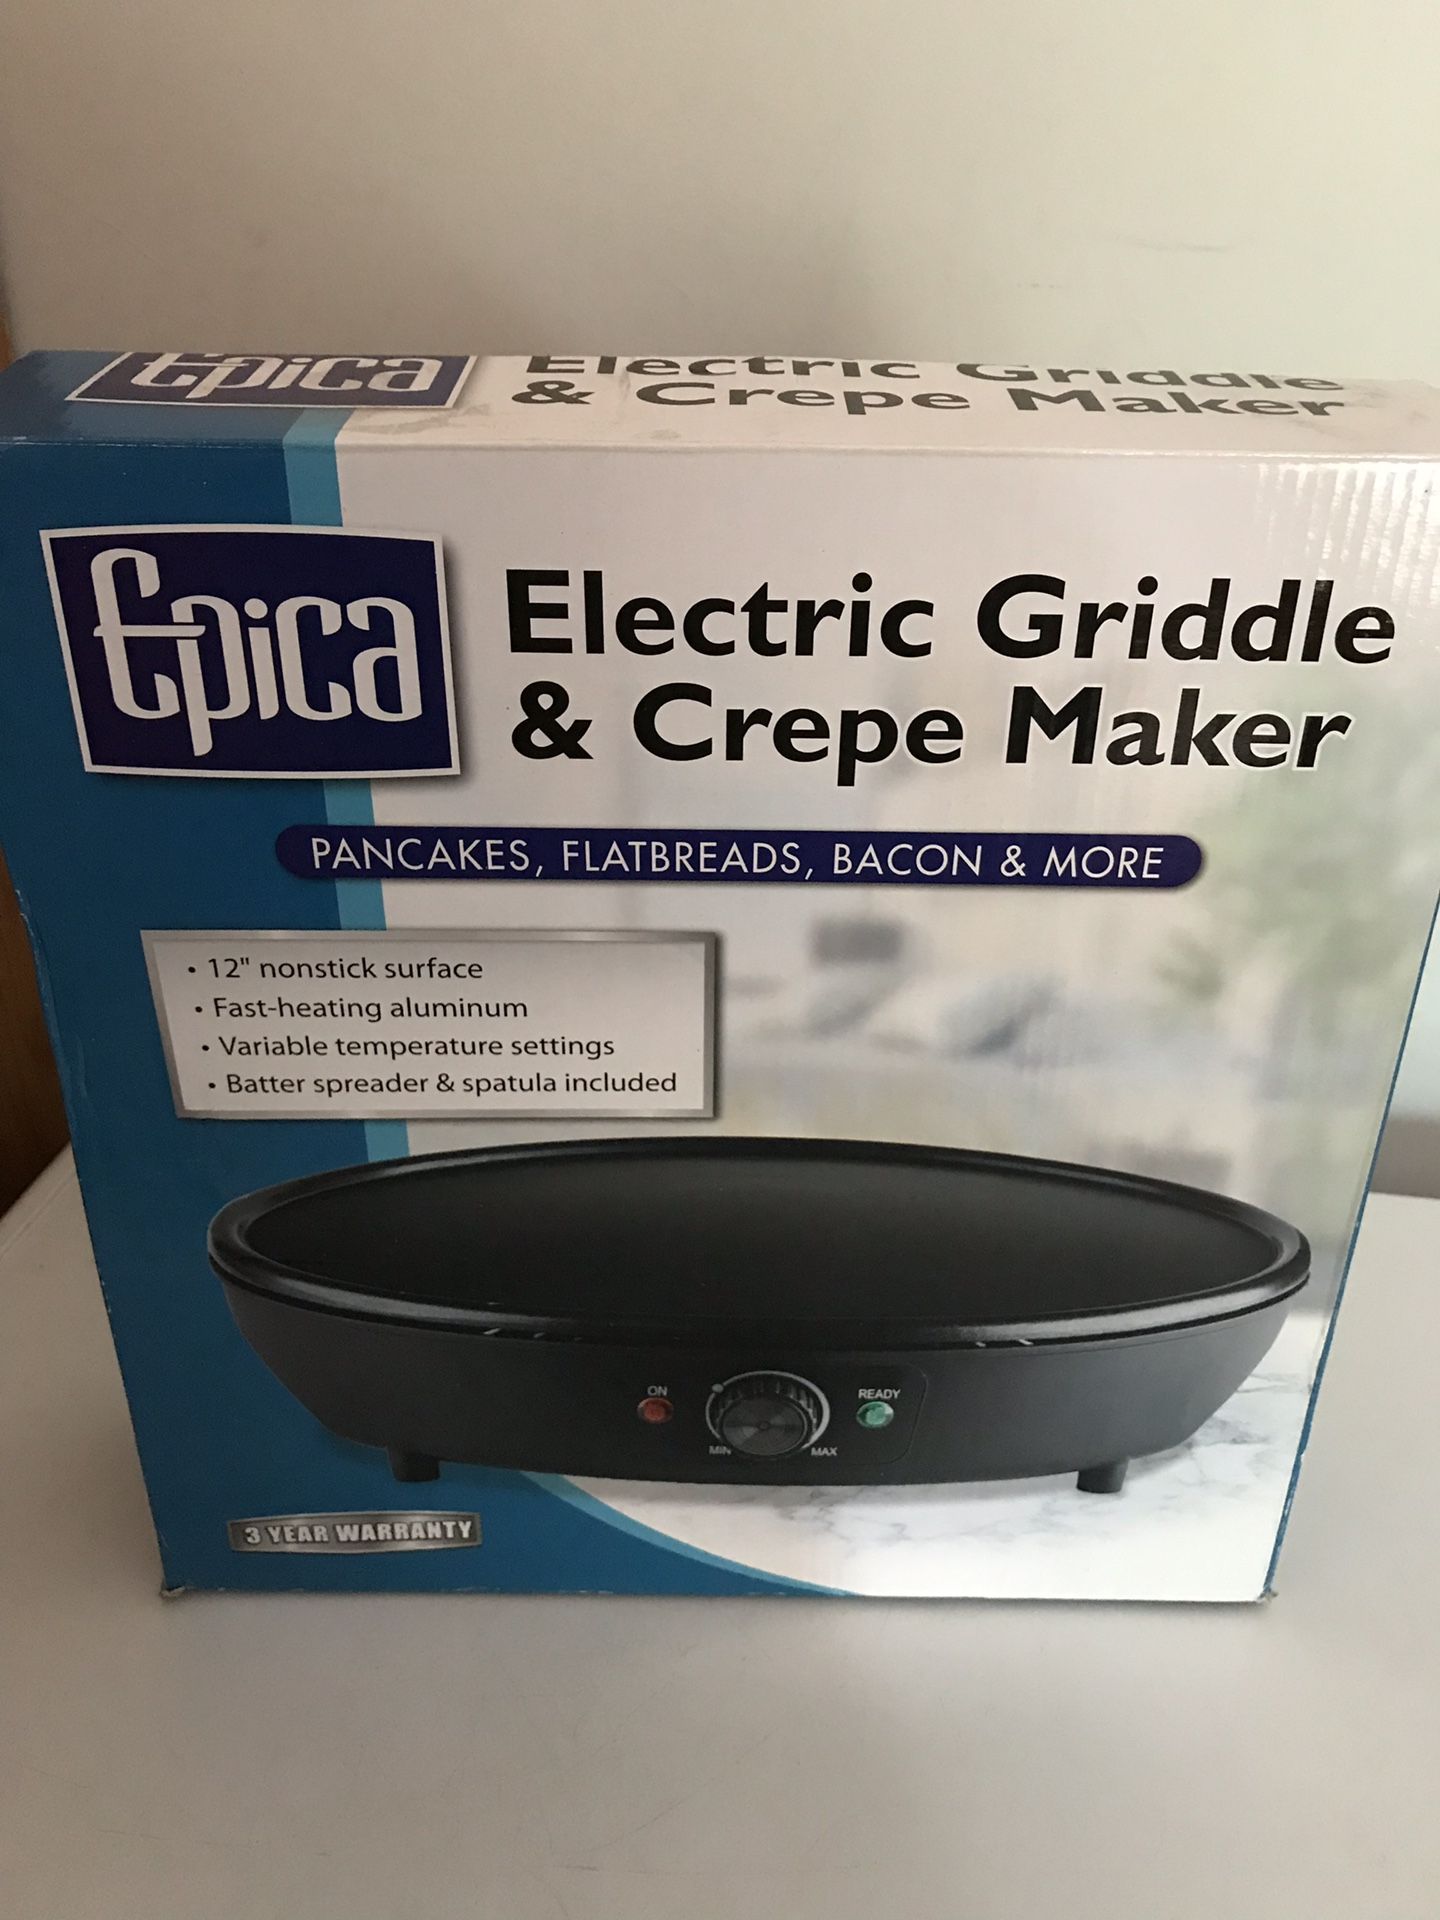 Electric griddle & crepe maker